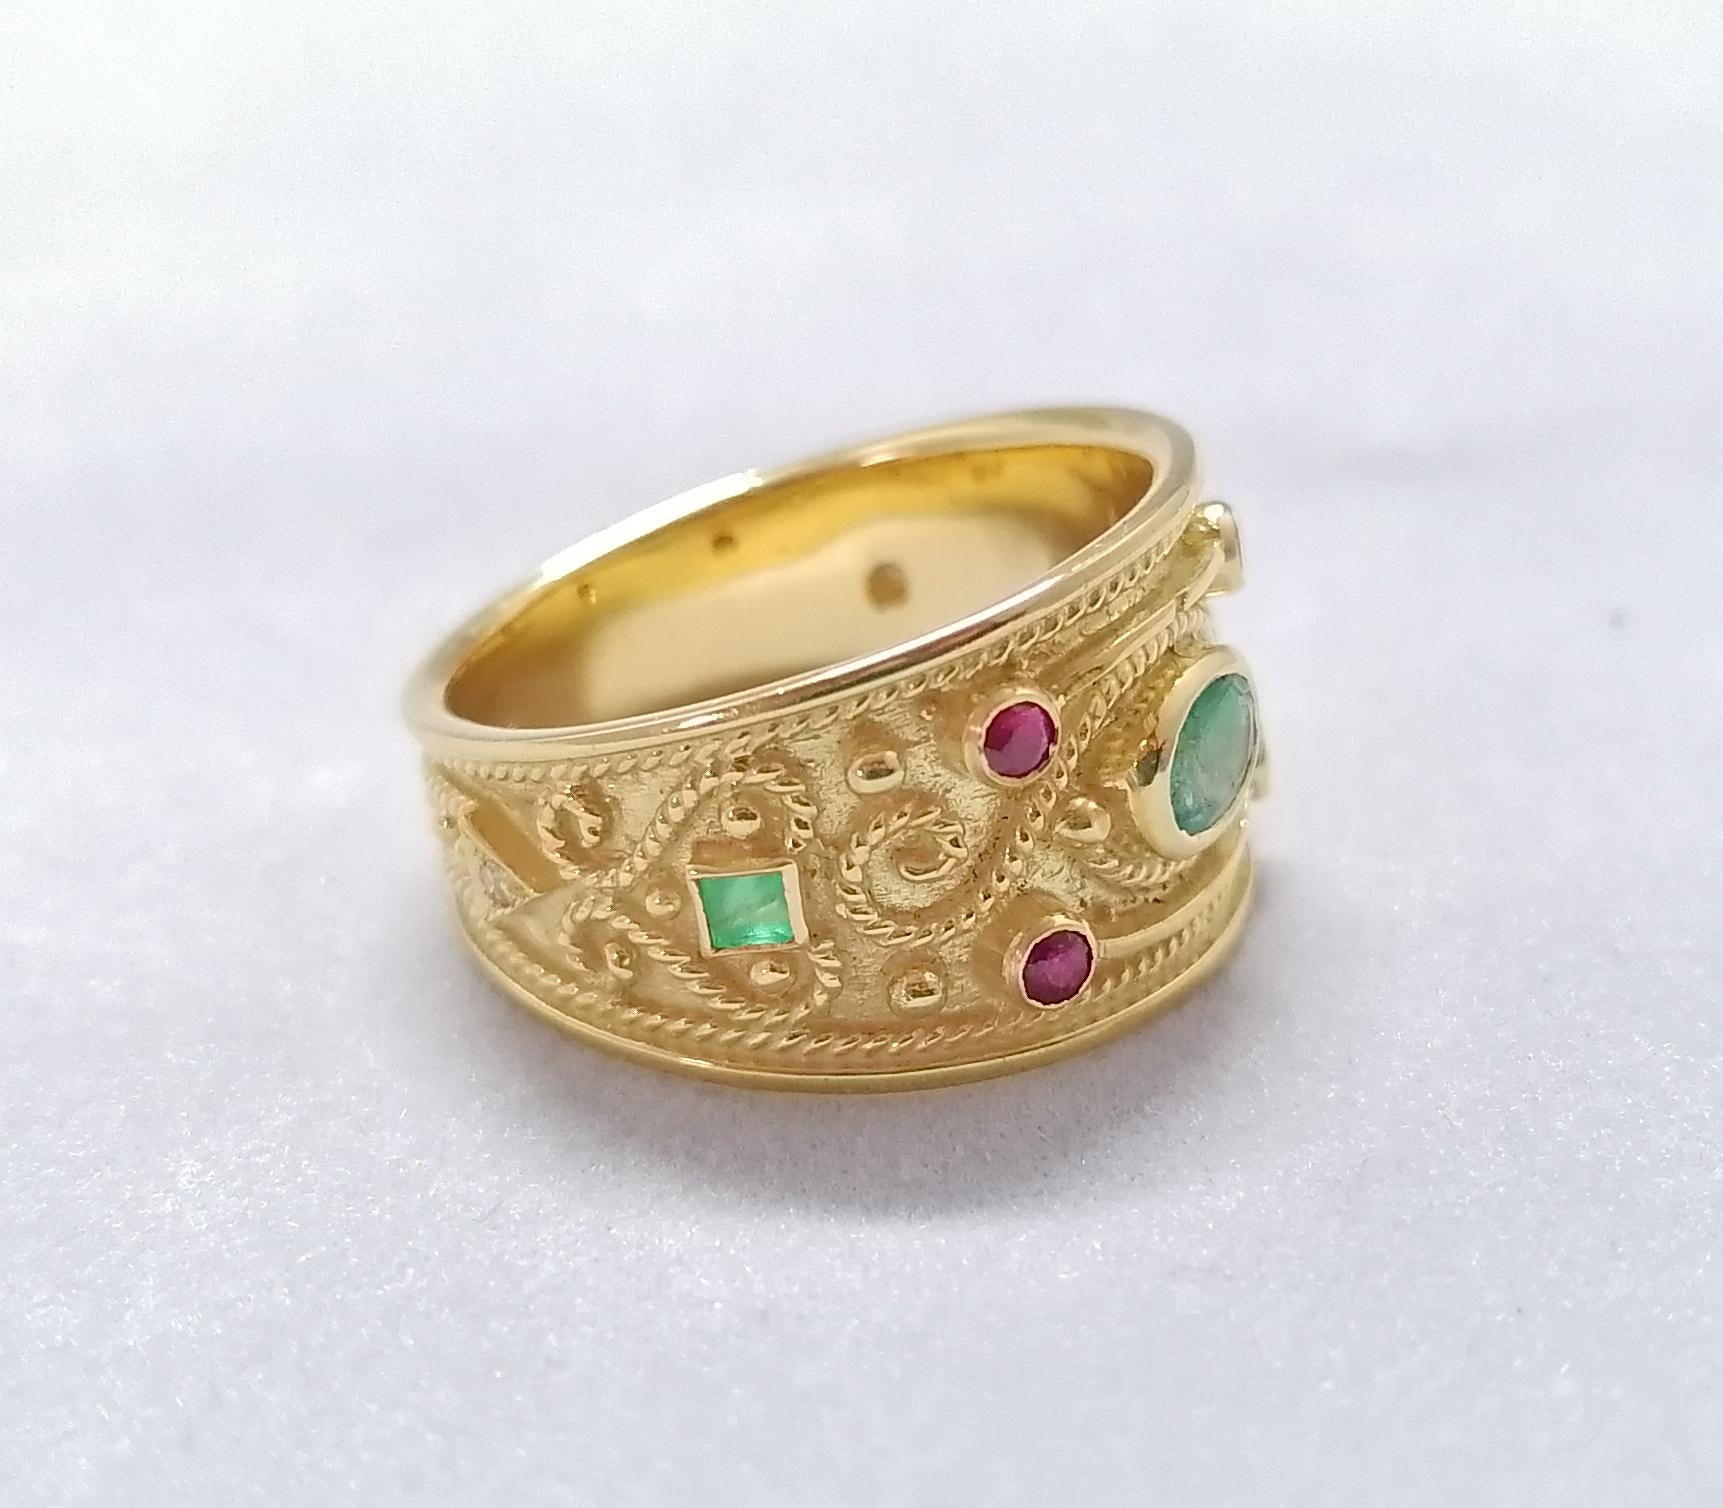 Dieser S.Georgios Designer 18 Karat Gelbgold Multicolor Band Ring ist komplett handgefertigt mit byzantinischer Perlengranulation und einem einzigartigen Samthintergrund. Dieser wunderschöne Ring besteht aus einem natürlichen Smaragd im Ovalschliff,